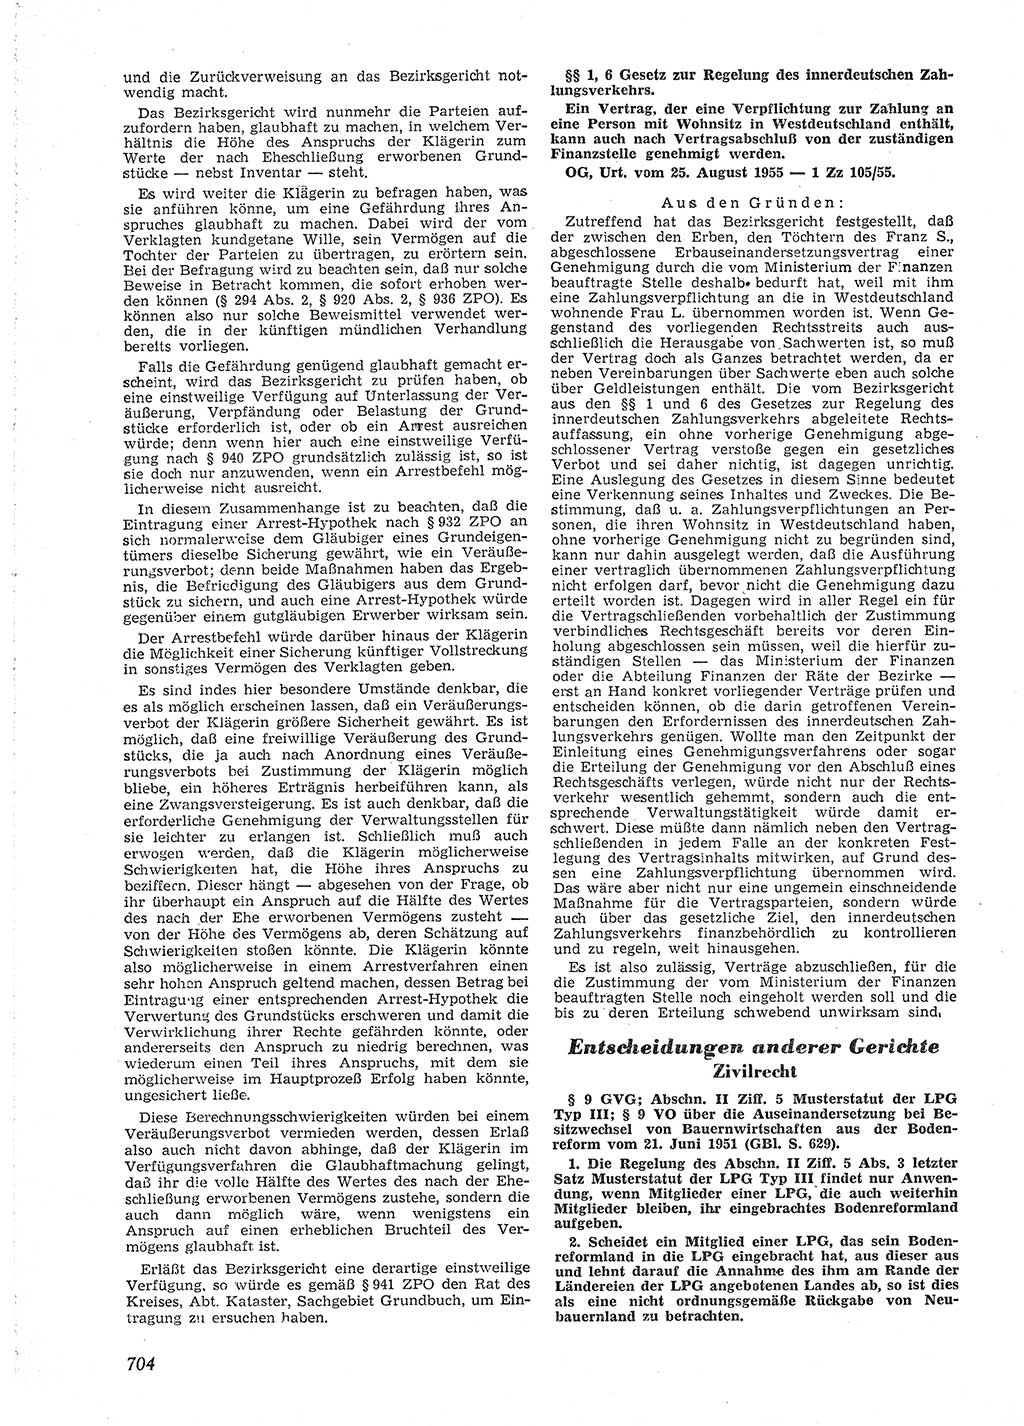 Neue Justiz (NJ), Zeitschrift für Recht und Rechtswissenschaft [Deutsche Demokratische Republik (DDR)], 9. Jahrgang 1955, Seite 704 (NJ DDR 1955, S. 704)